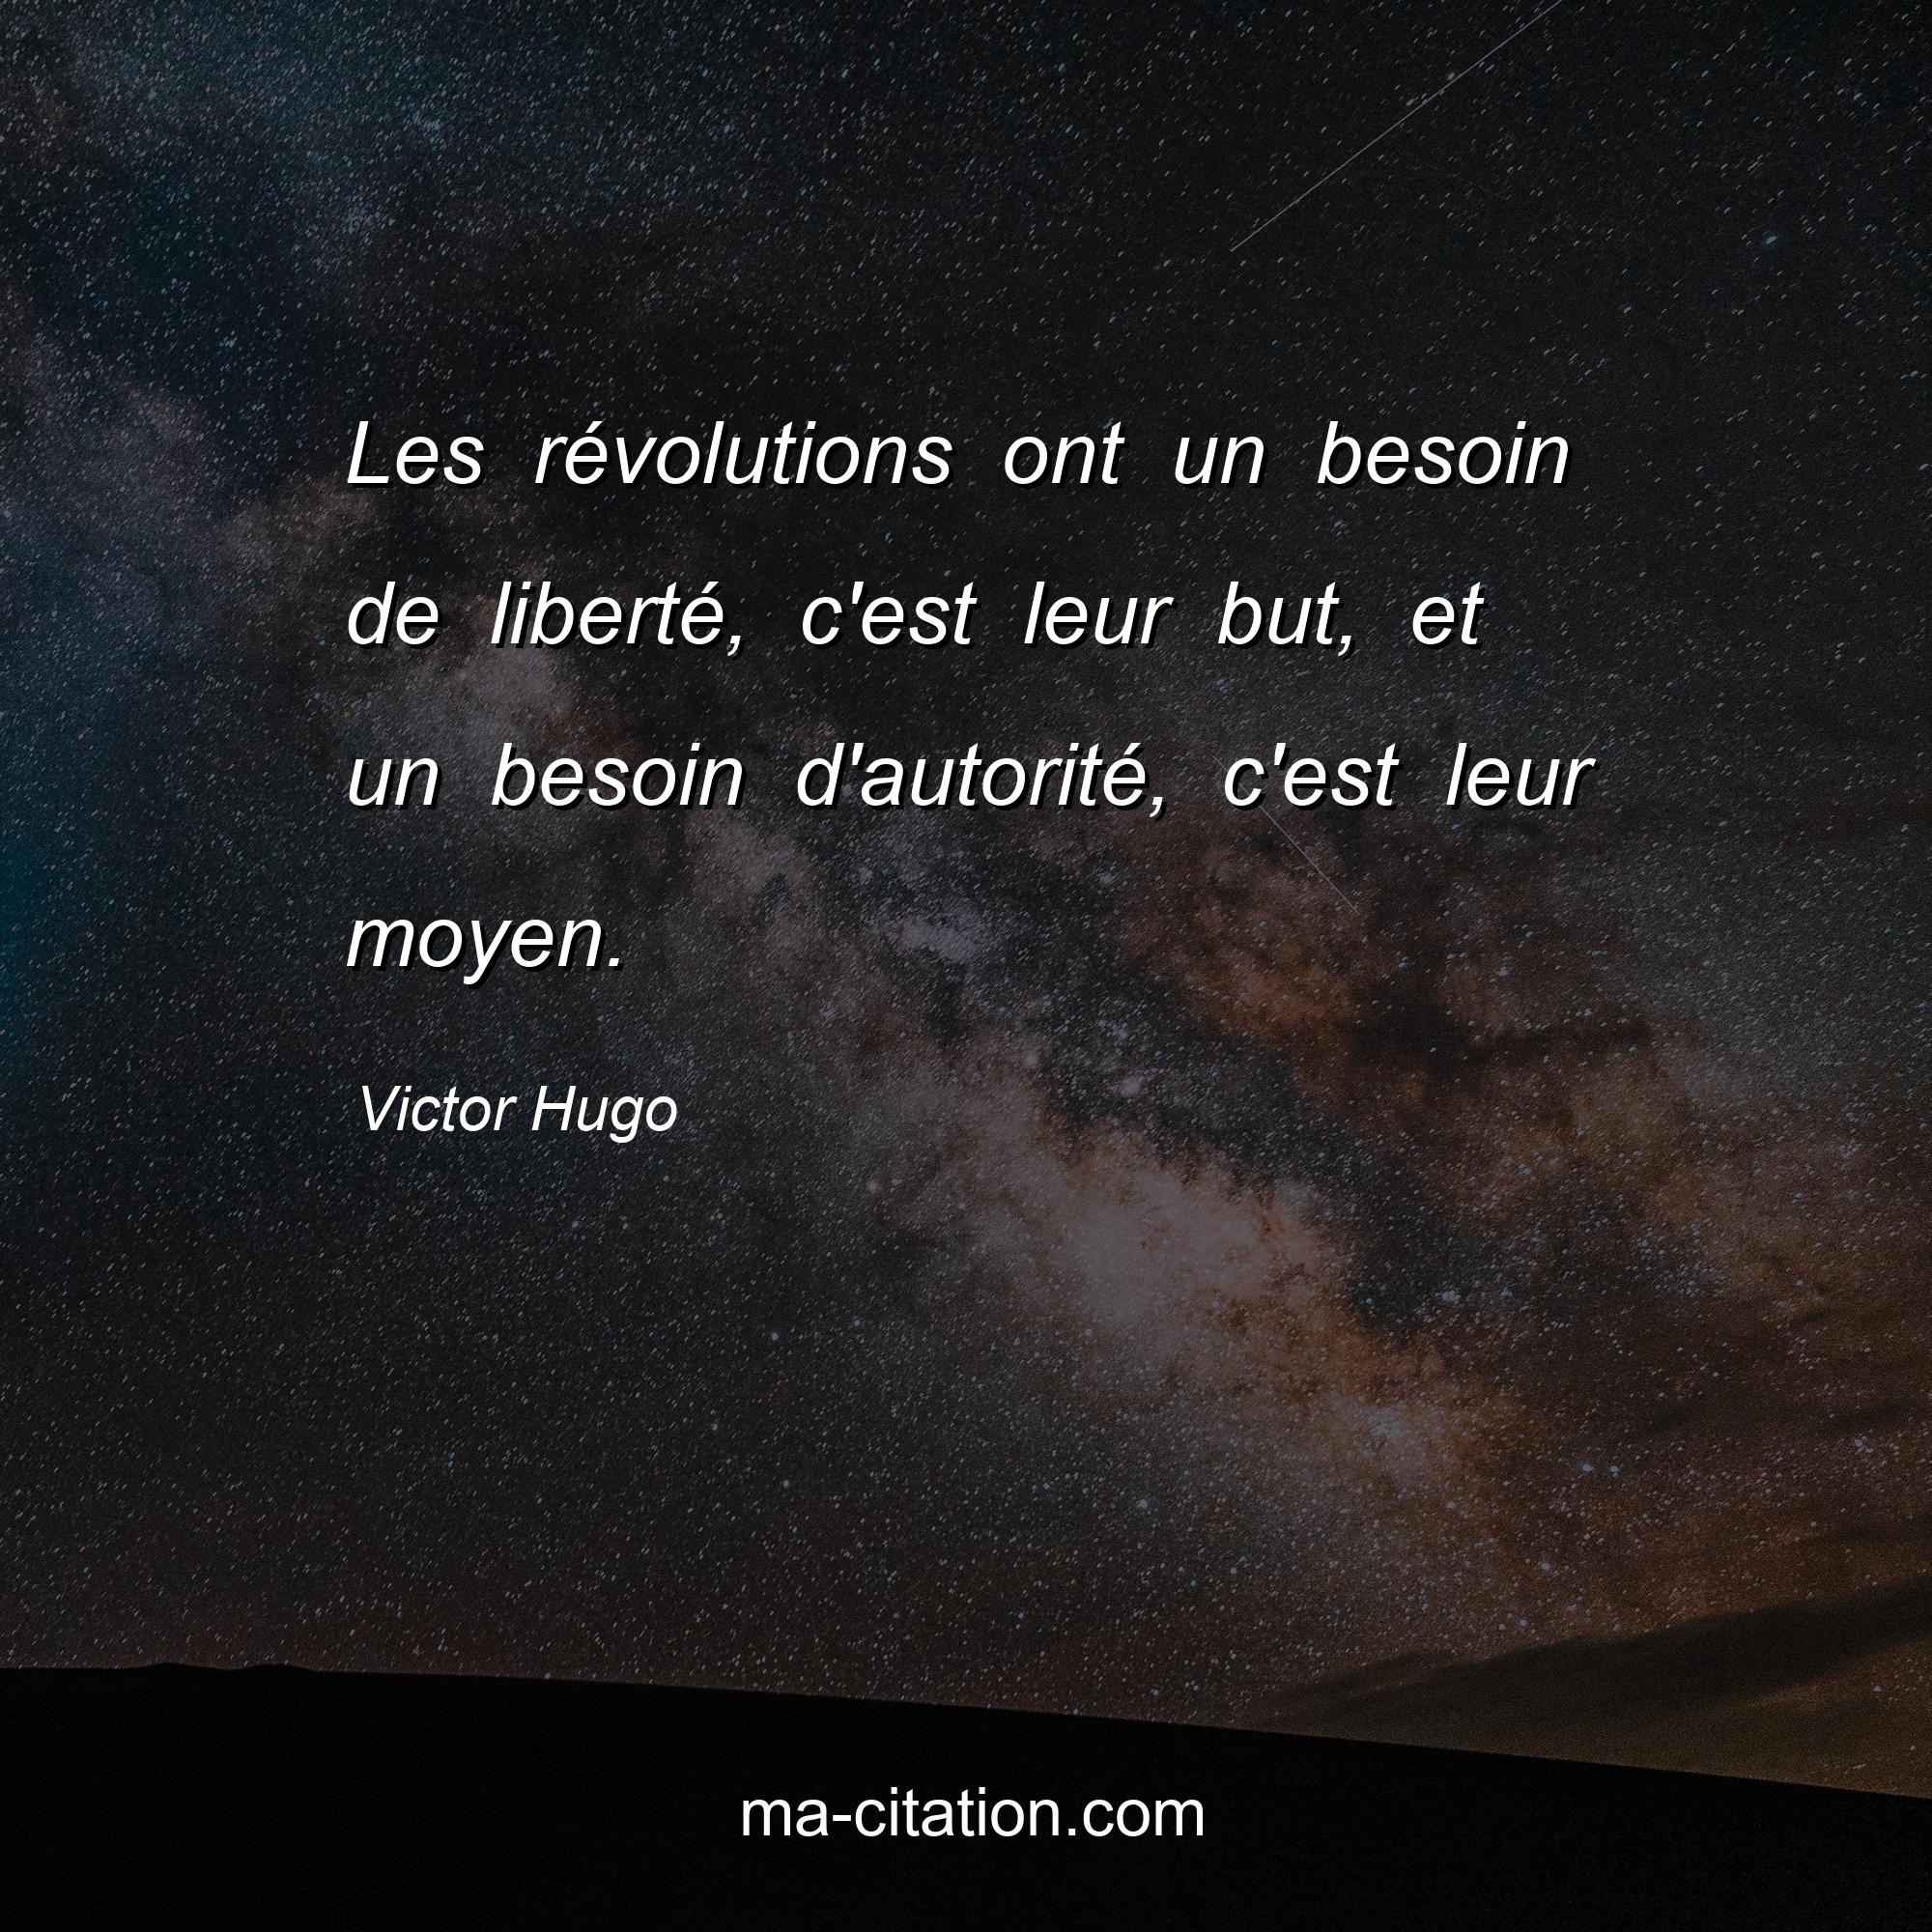 Victor Hugo : Les révolutions ont un besoin de liberté, c'est leur but, et un besoin d'autorité, c'est leur moyen.